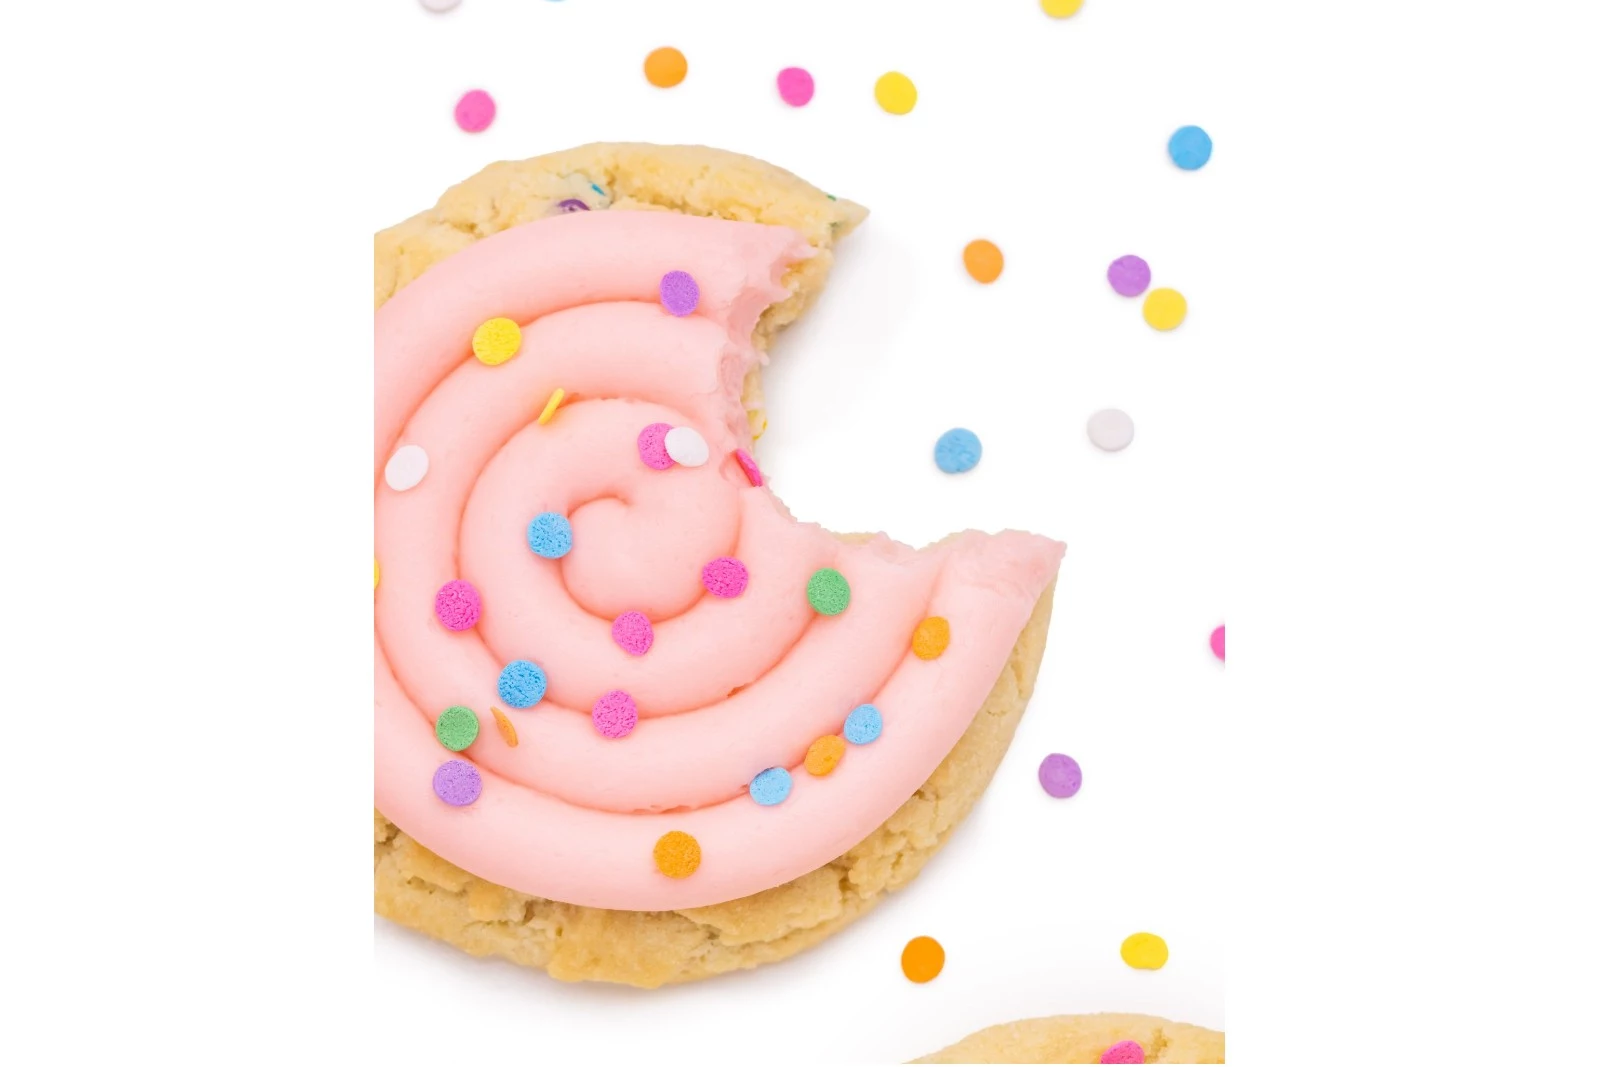 Crumbl Cookies Opens Doors This Week in Manalapan, NJ